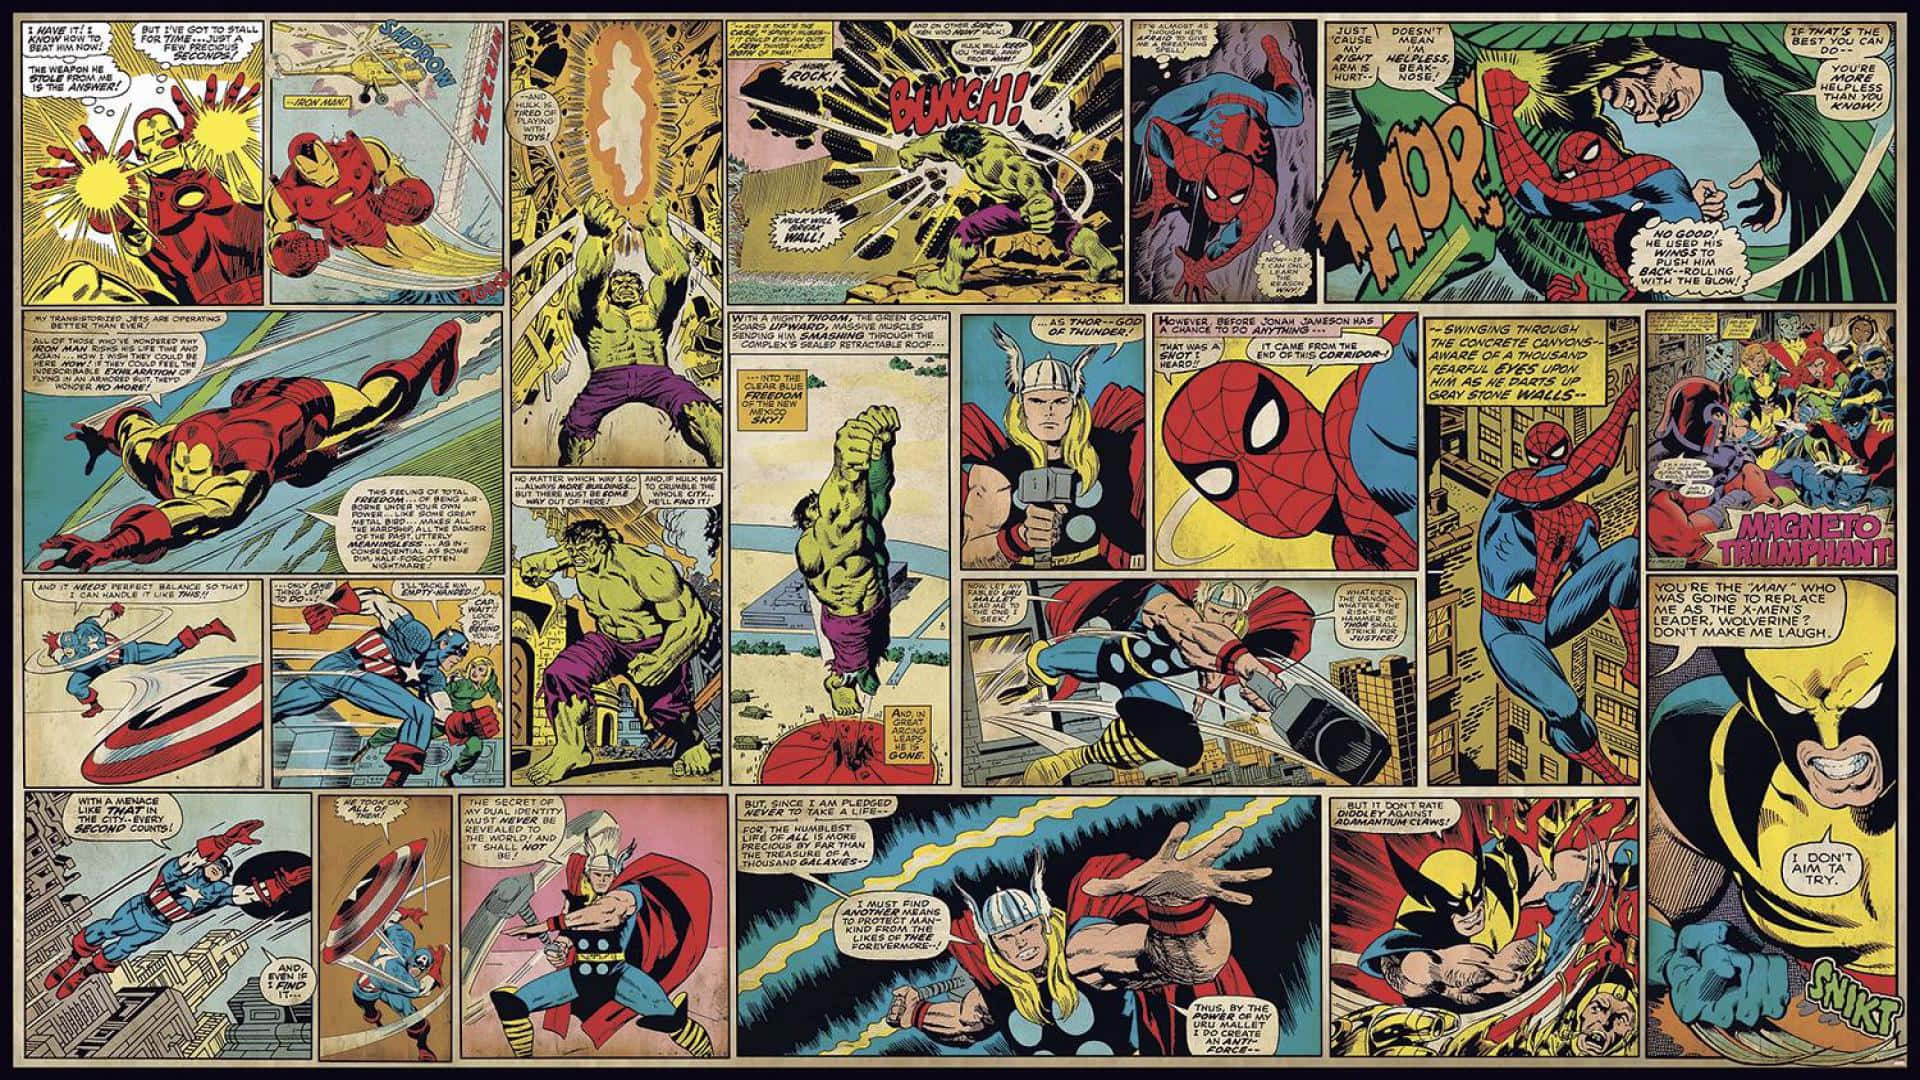 Marvelserietidningar - Avengers - Avengers - Avengers - Avengers